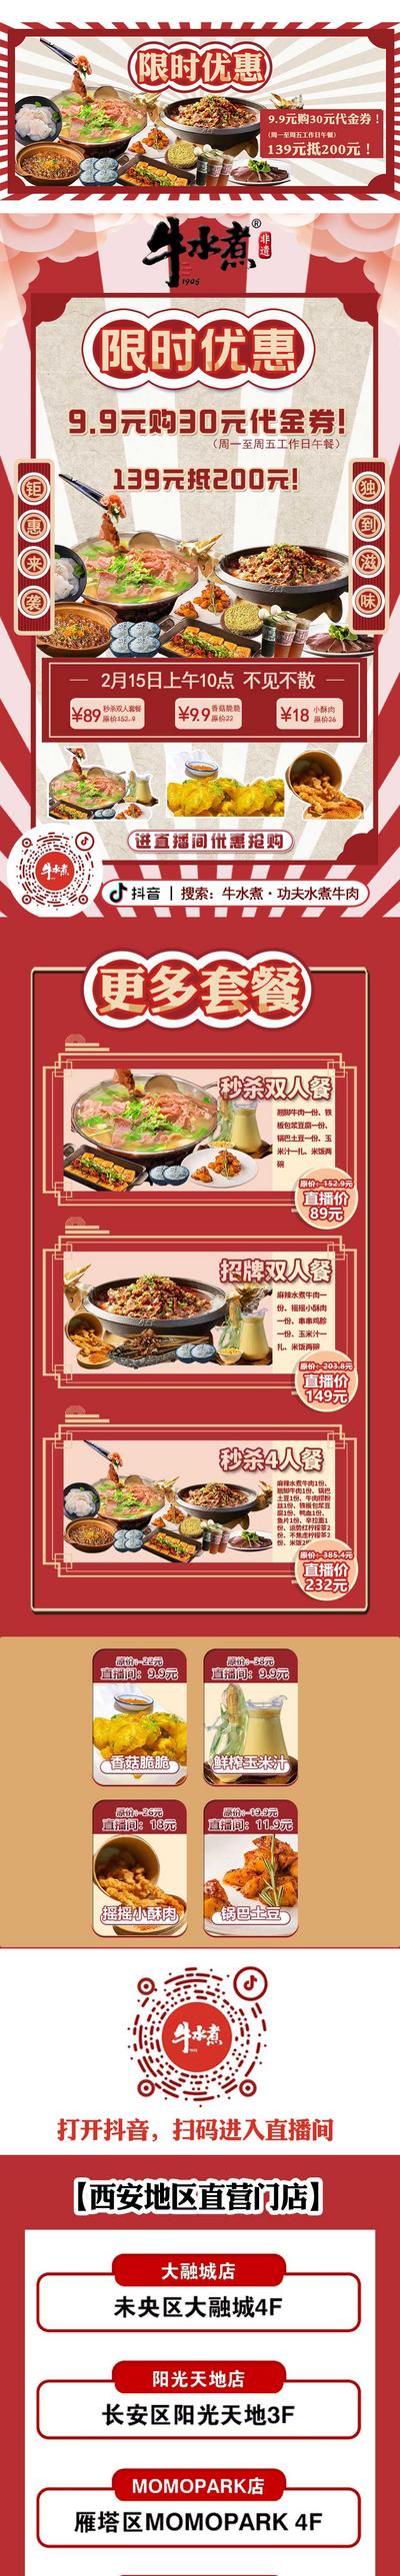 南门网 专题设计 长图 菜品 优惠 火锅 牛肉 新品 喜庆